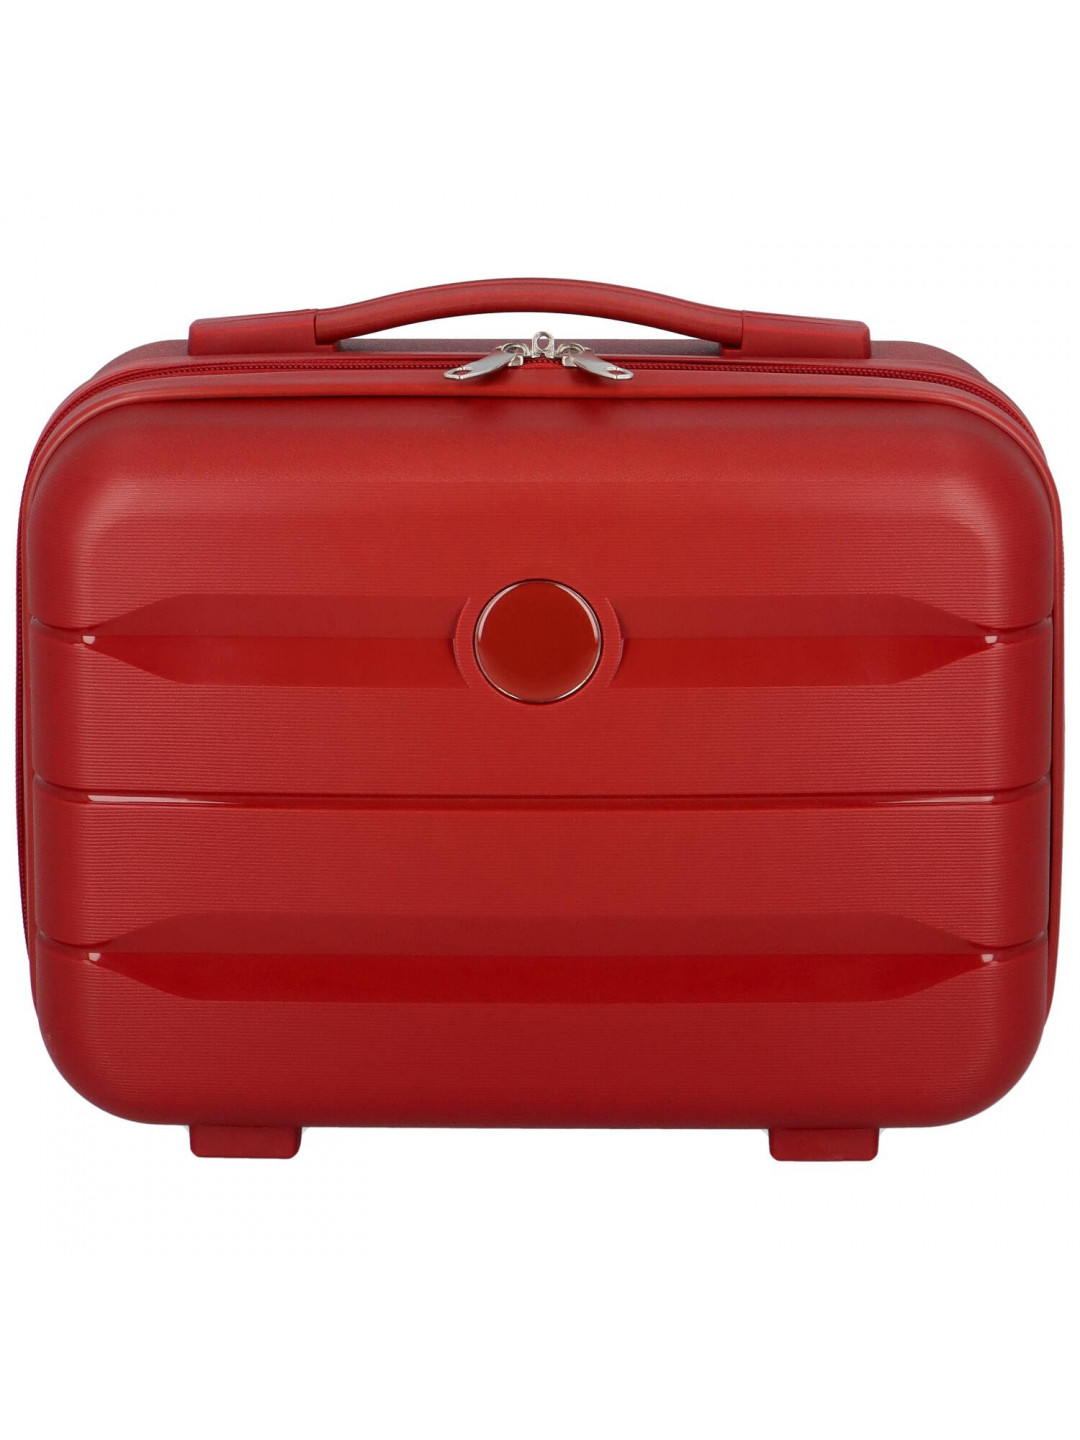 Cestovní plastový kufr tmavě červený – Ormi Rochus XS